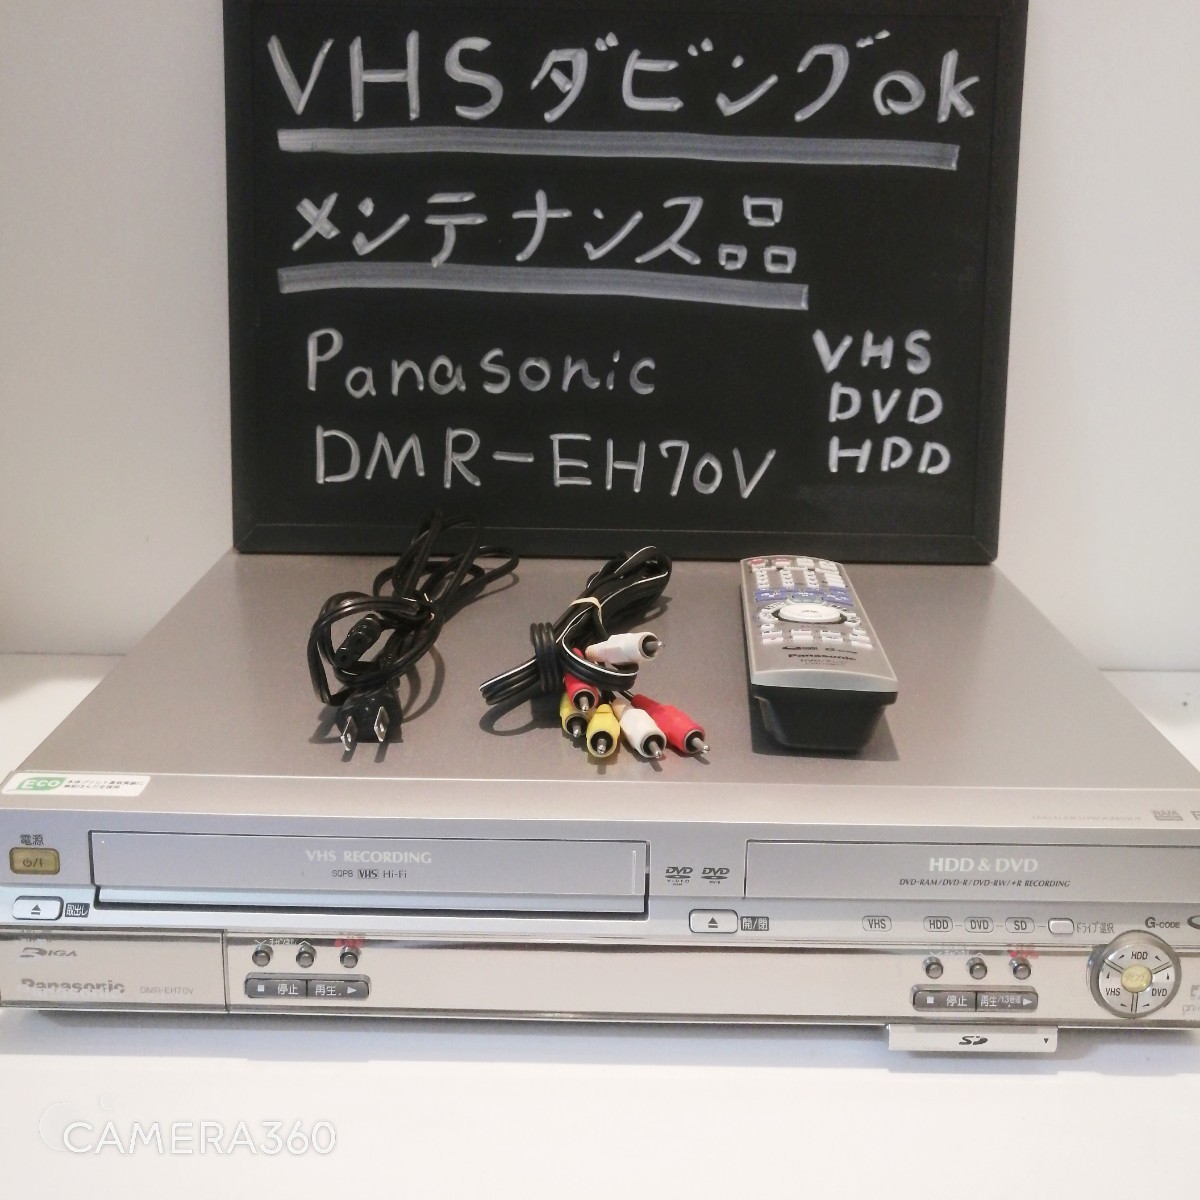 美品・整備品★VHS→DVD-R/RW・HDDへダビング可能★リモコン・電源ケーブル・3色ケーブル付き★panasonic DMR-EH70V DVD  HDD レコーダー